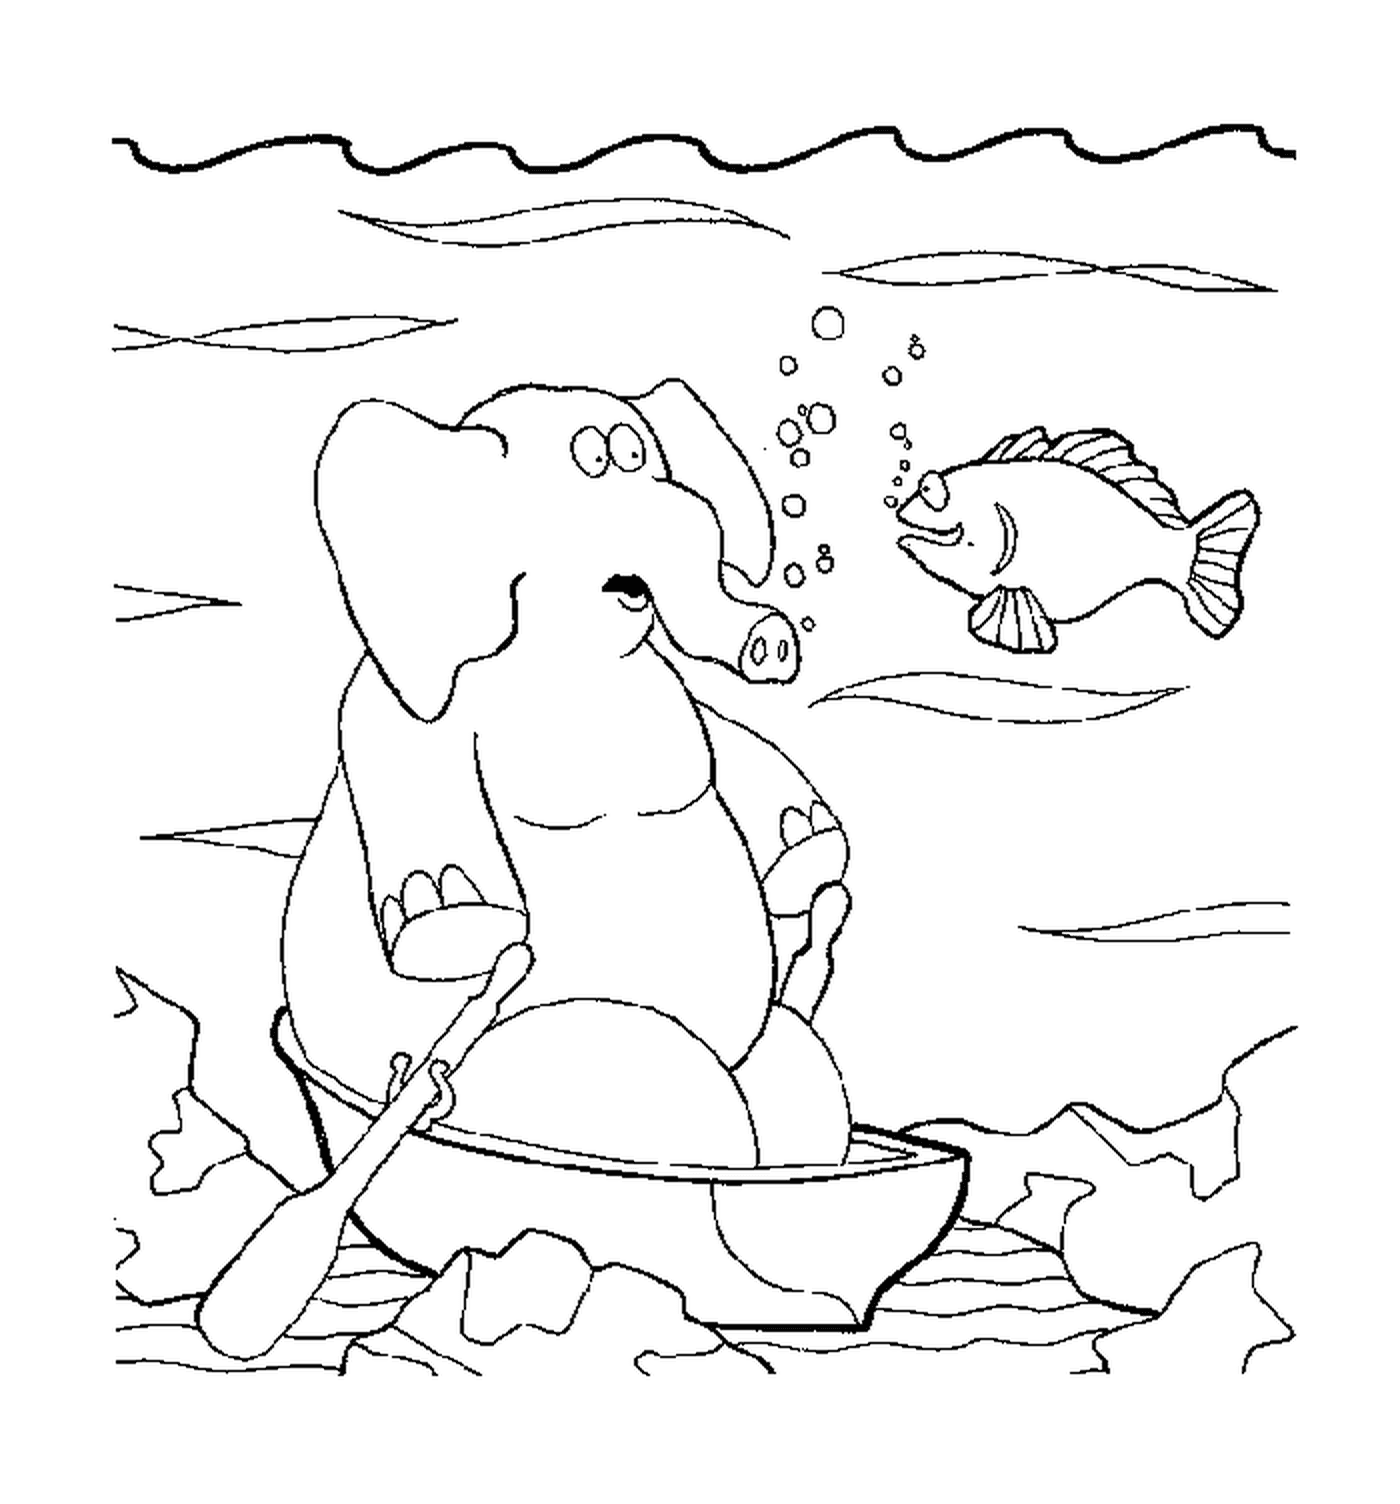  Um elefante debaixo da água 